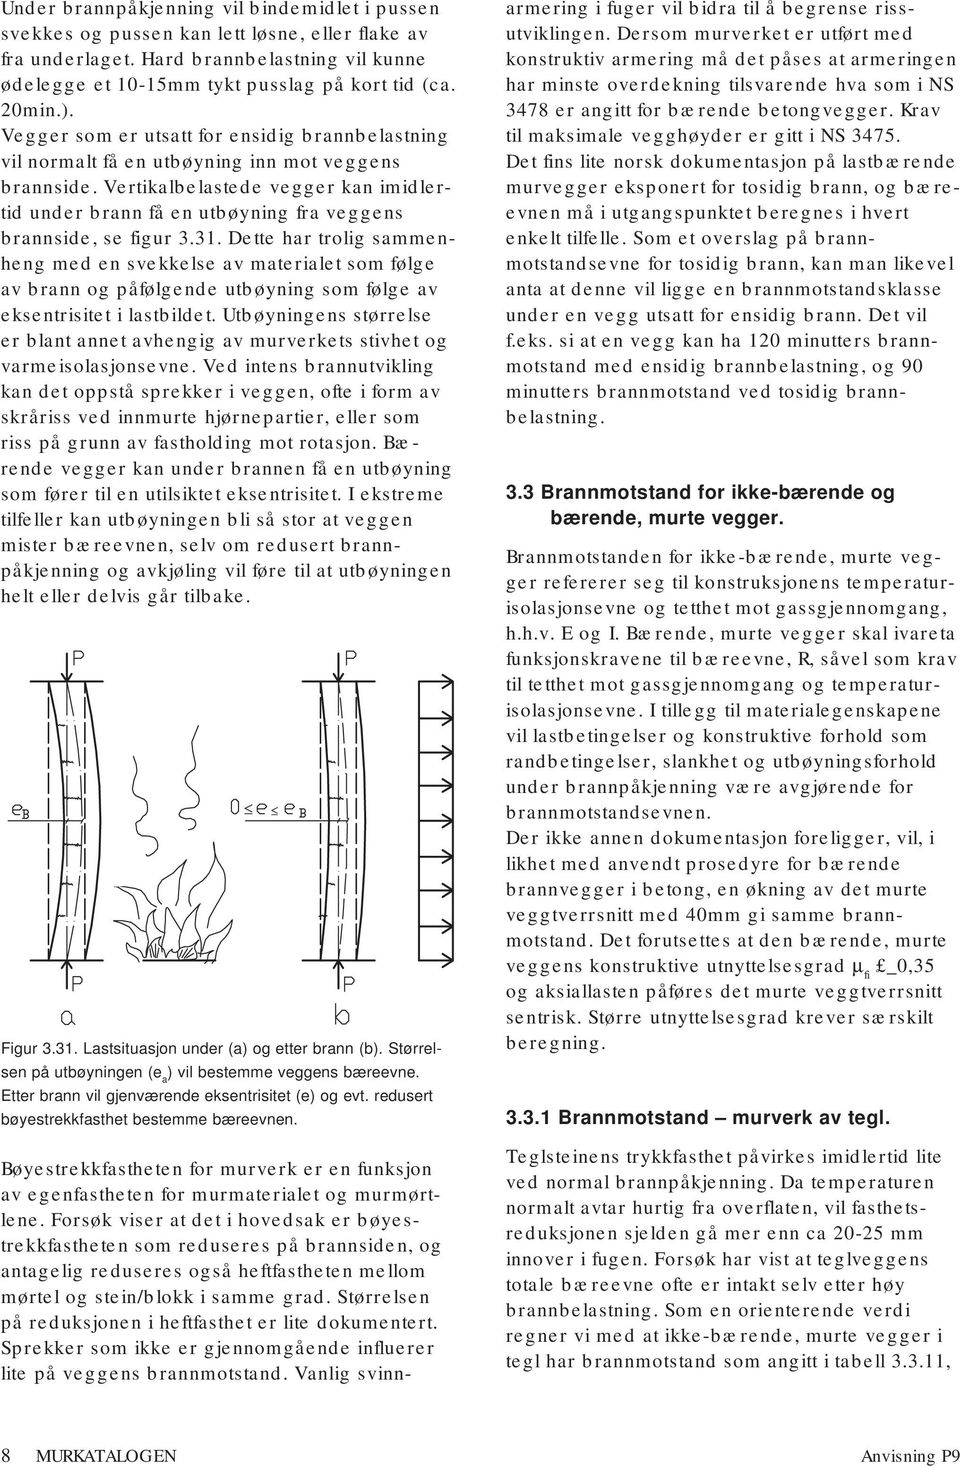 Vertikalbelastede vegger kan imidlertid under brann få en utbøyning fra veggens brannside, se figur 3.31.